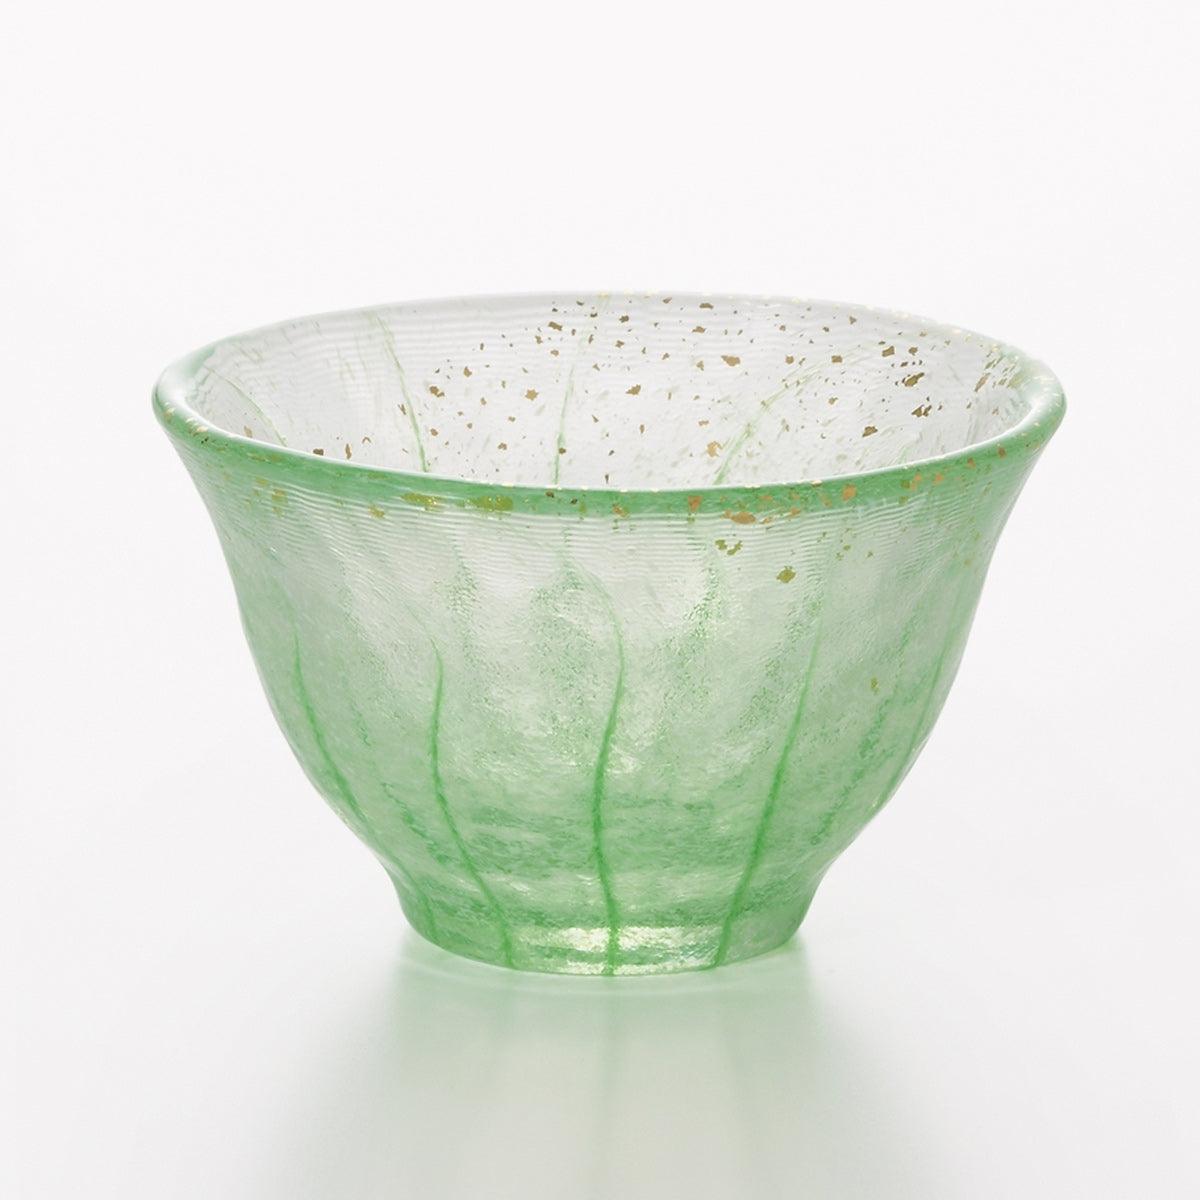 (一對價)70cc【Aderia】夏竹流水 日本津輕庄内金箔手工玻璃祝杯 - MSA玻璃雕刻